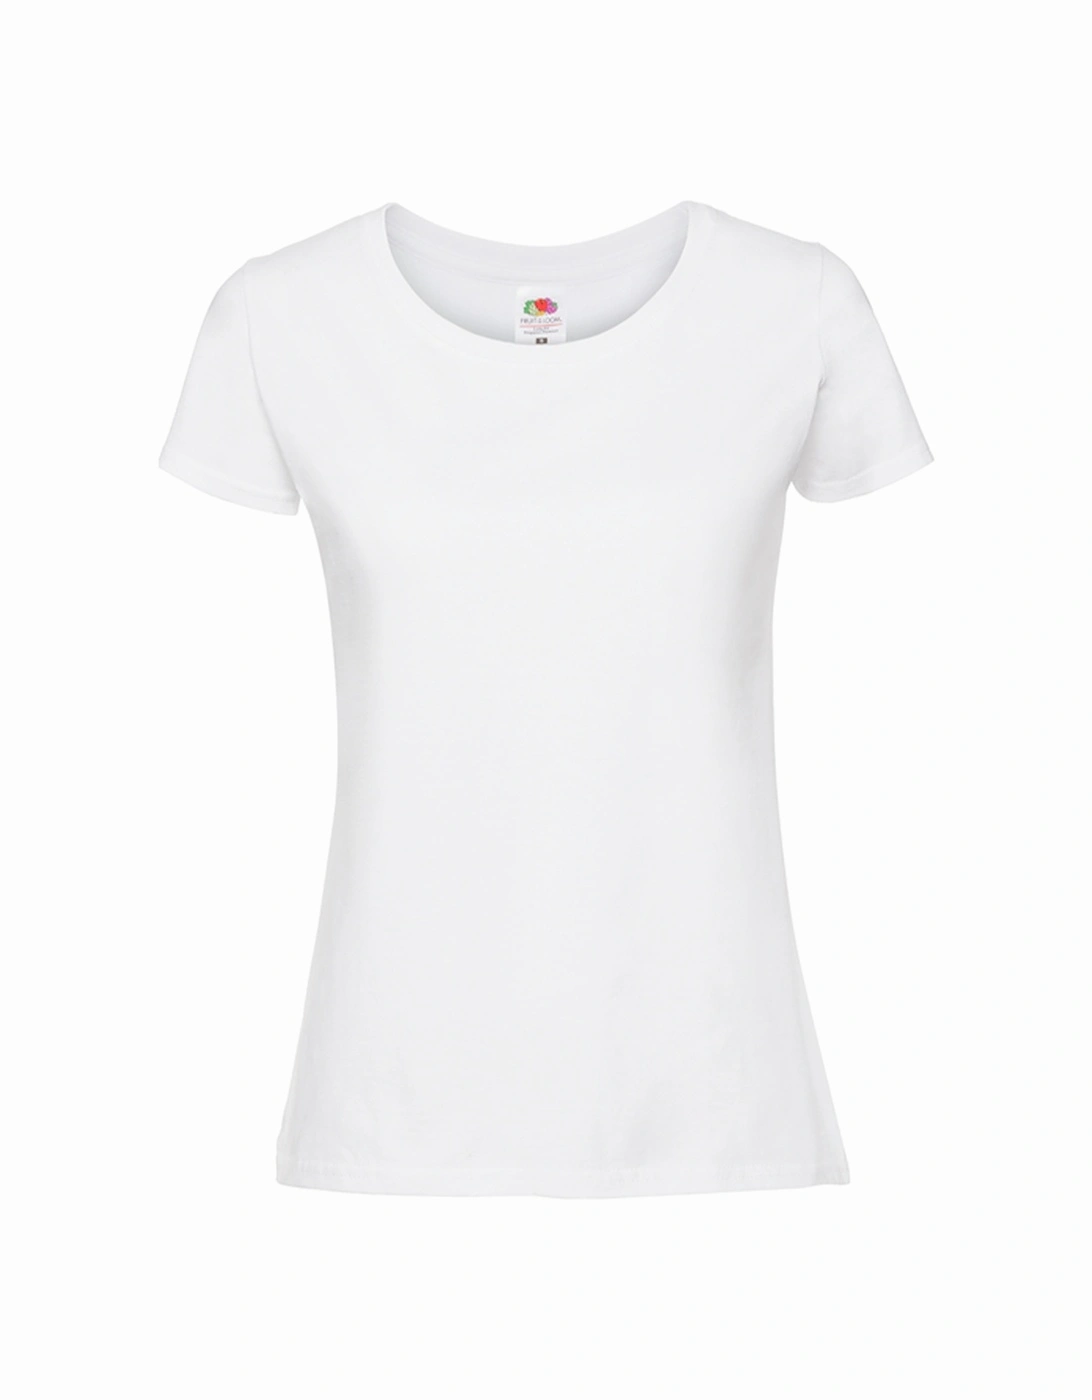 Womens/Ladies Premium Ringspun Cotton T-Shirt, 5 of 4